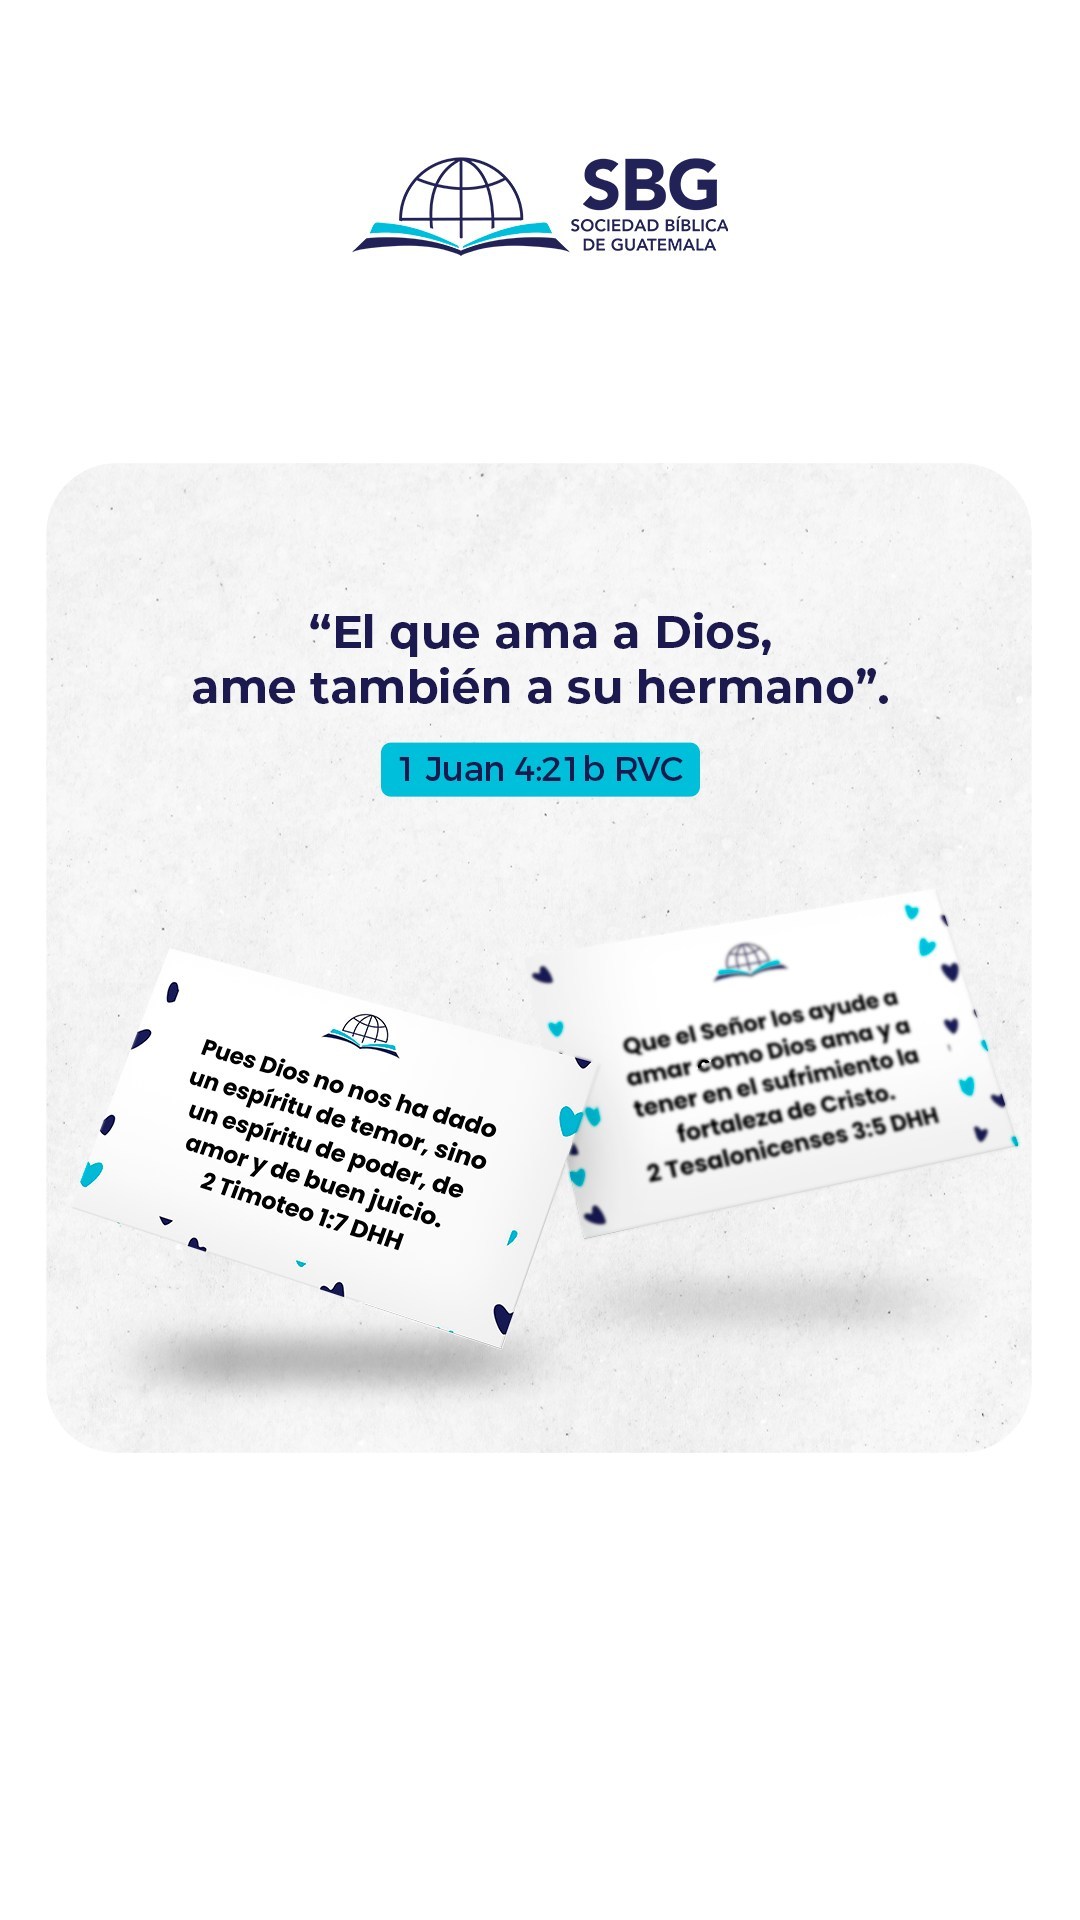 Inicia tu semana de la mejor manera: compartiendo del amor verdadero a través de la Biblia 📖 ❤️
¿Cómo vas a mostrar amor a otros hoy?

"Nosotros recibimos de él este mandamiento: El que ama a Dios, ame también a su hermano". 1 Juan 4:21 RVC

#SBG #SociedadBiblica #Guatemala #Trend #Amor #DiaDelCariño #AmorVerdadero #Compartir #Biblia #VersiculodelDia #Amigos #PuñoChallenge #Fistbump #FistBumpChallenge #PuñoSorpresa #ChocandoPuños #FYP